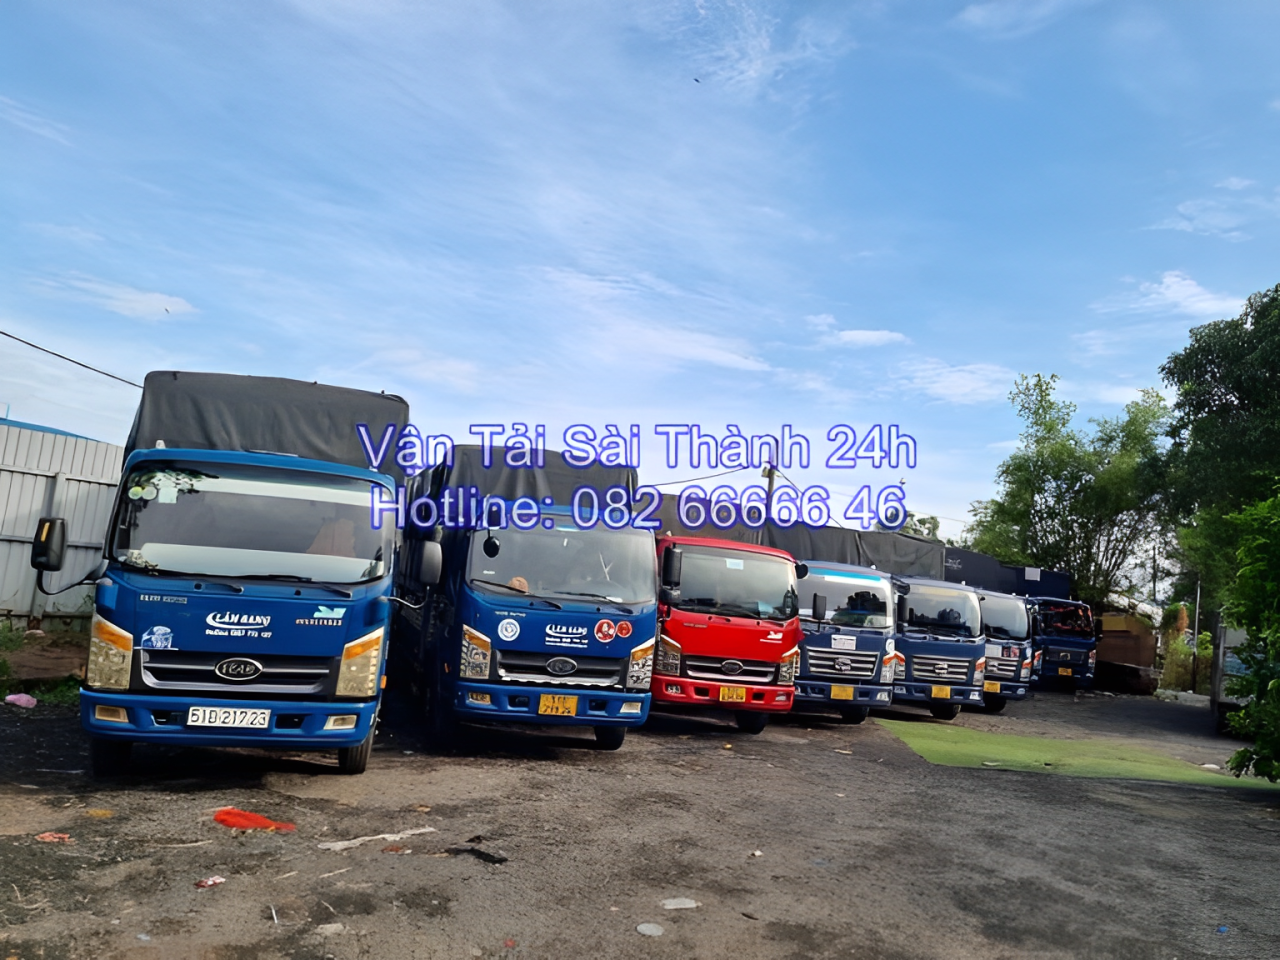 Cần thuê xe tải chở hàng tại Long An